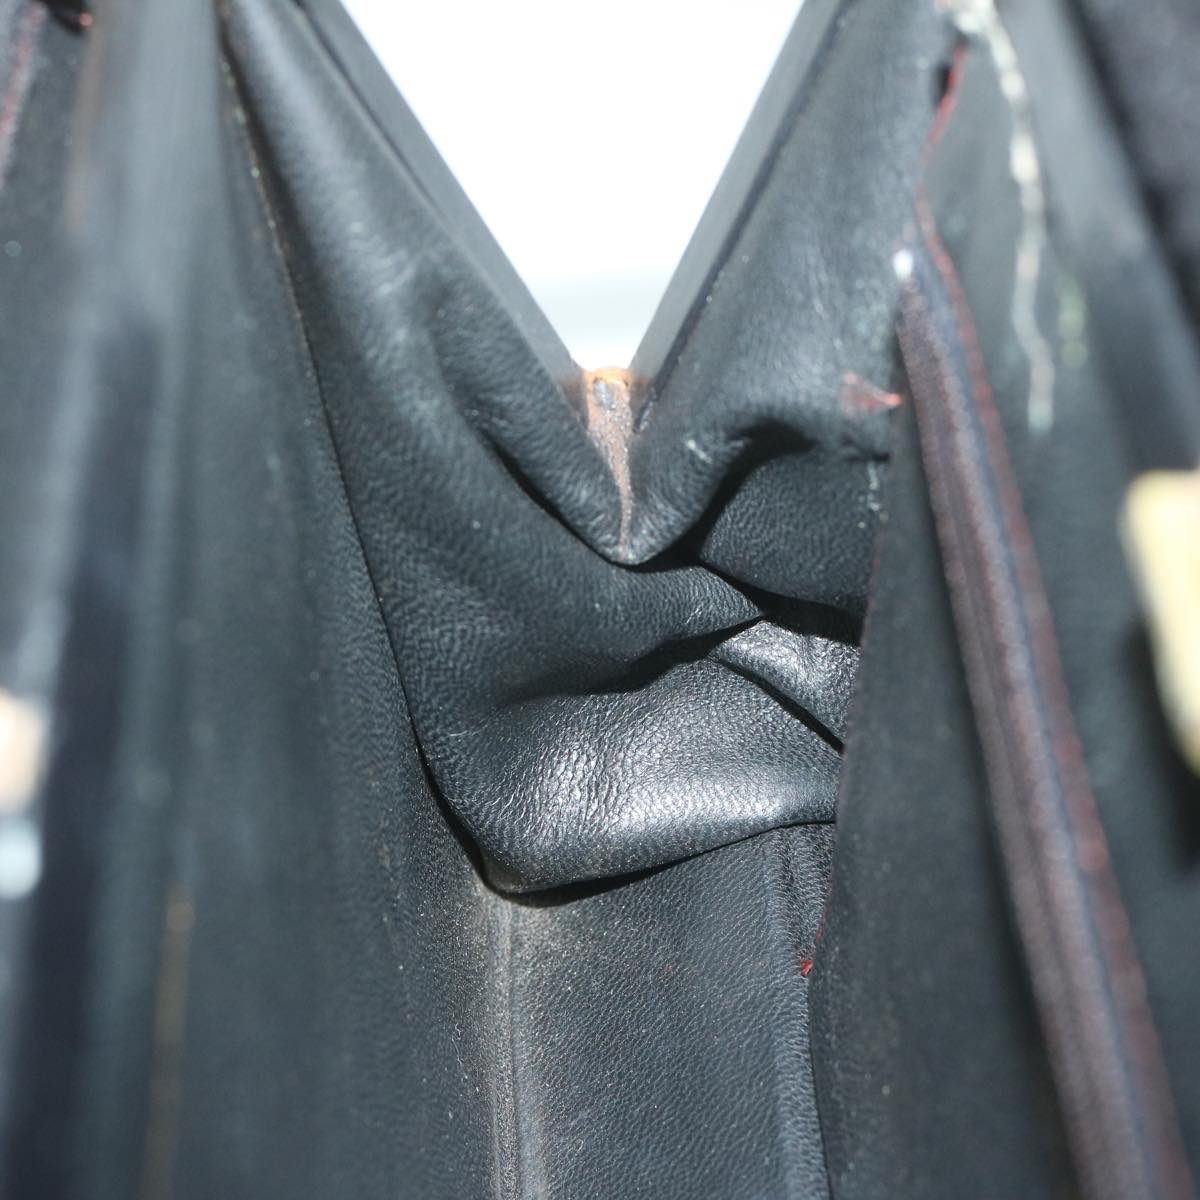 CHANEL Chain Shoulder Bag Cotton Black CC Auth bs11474